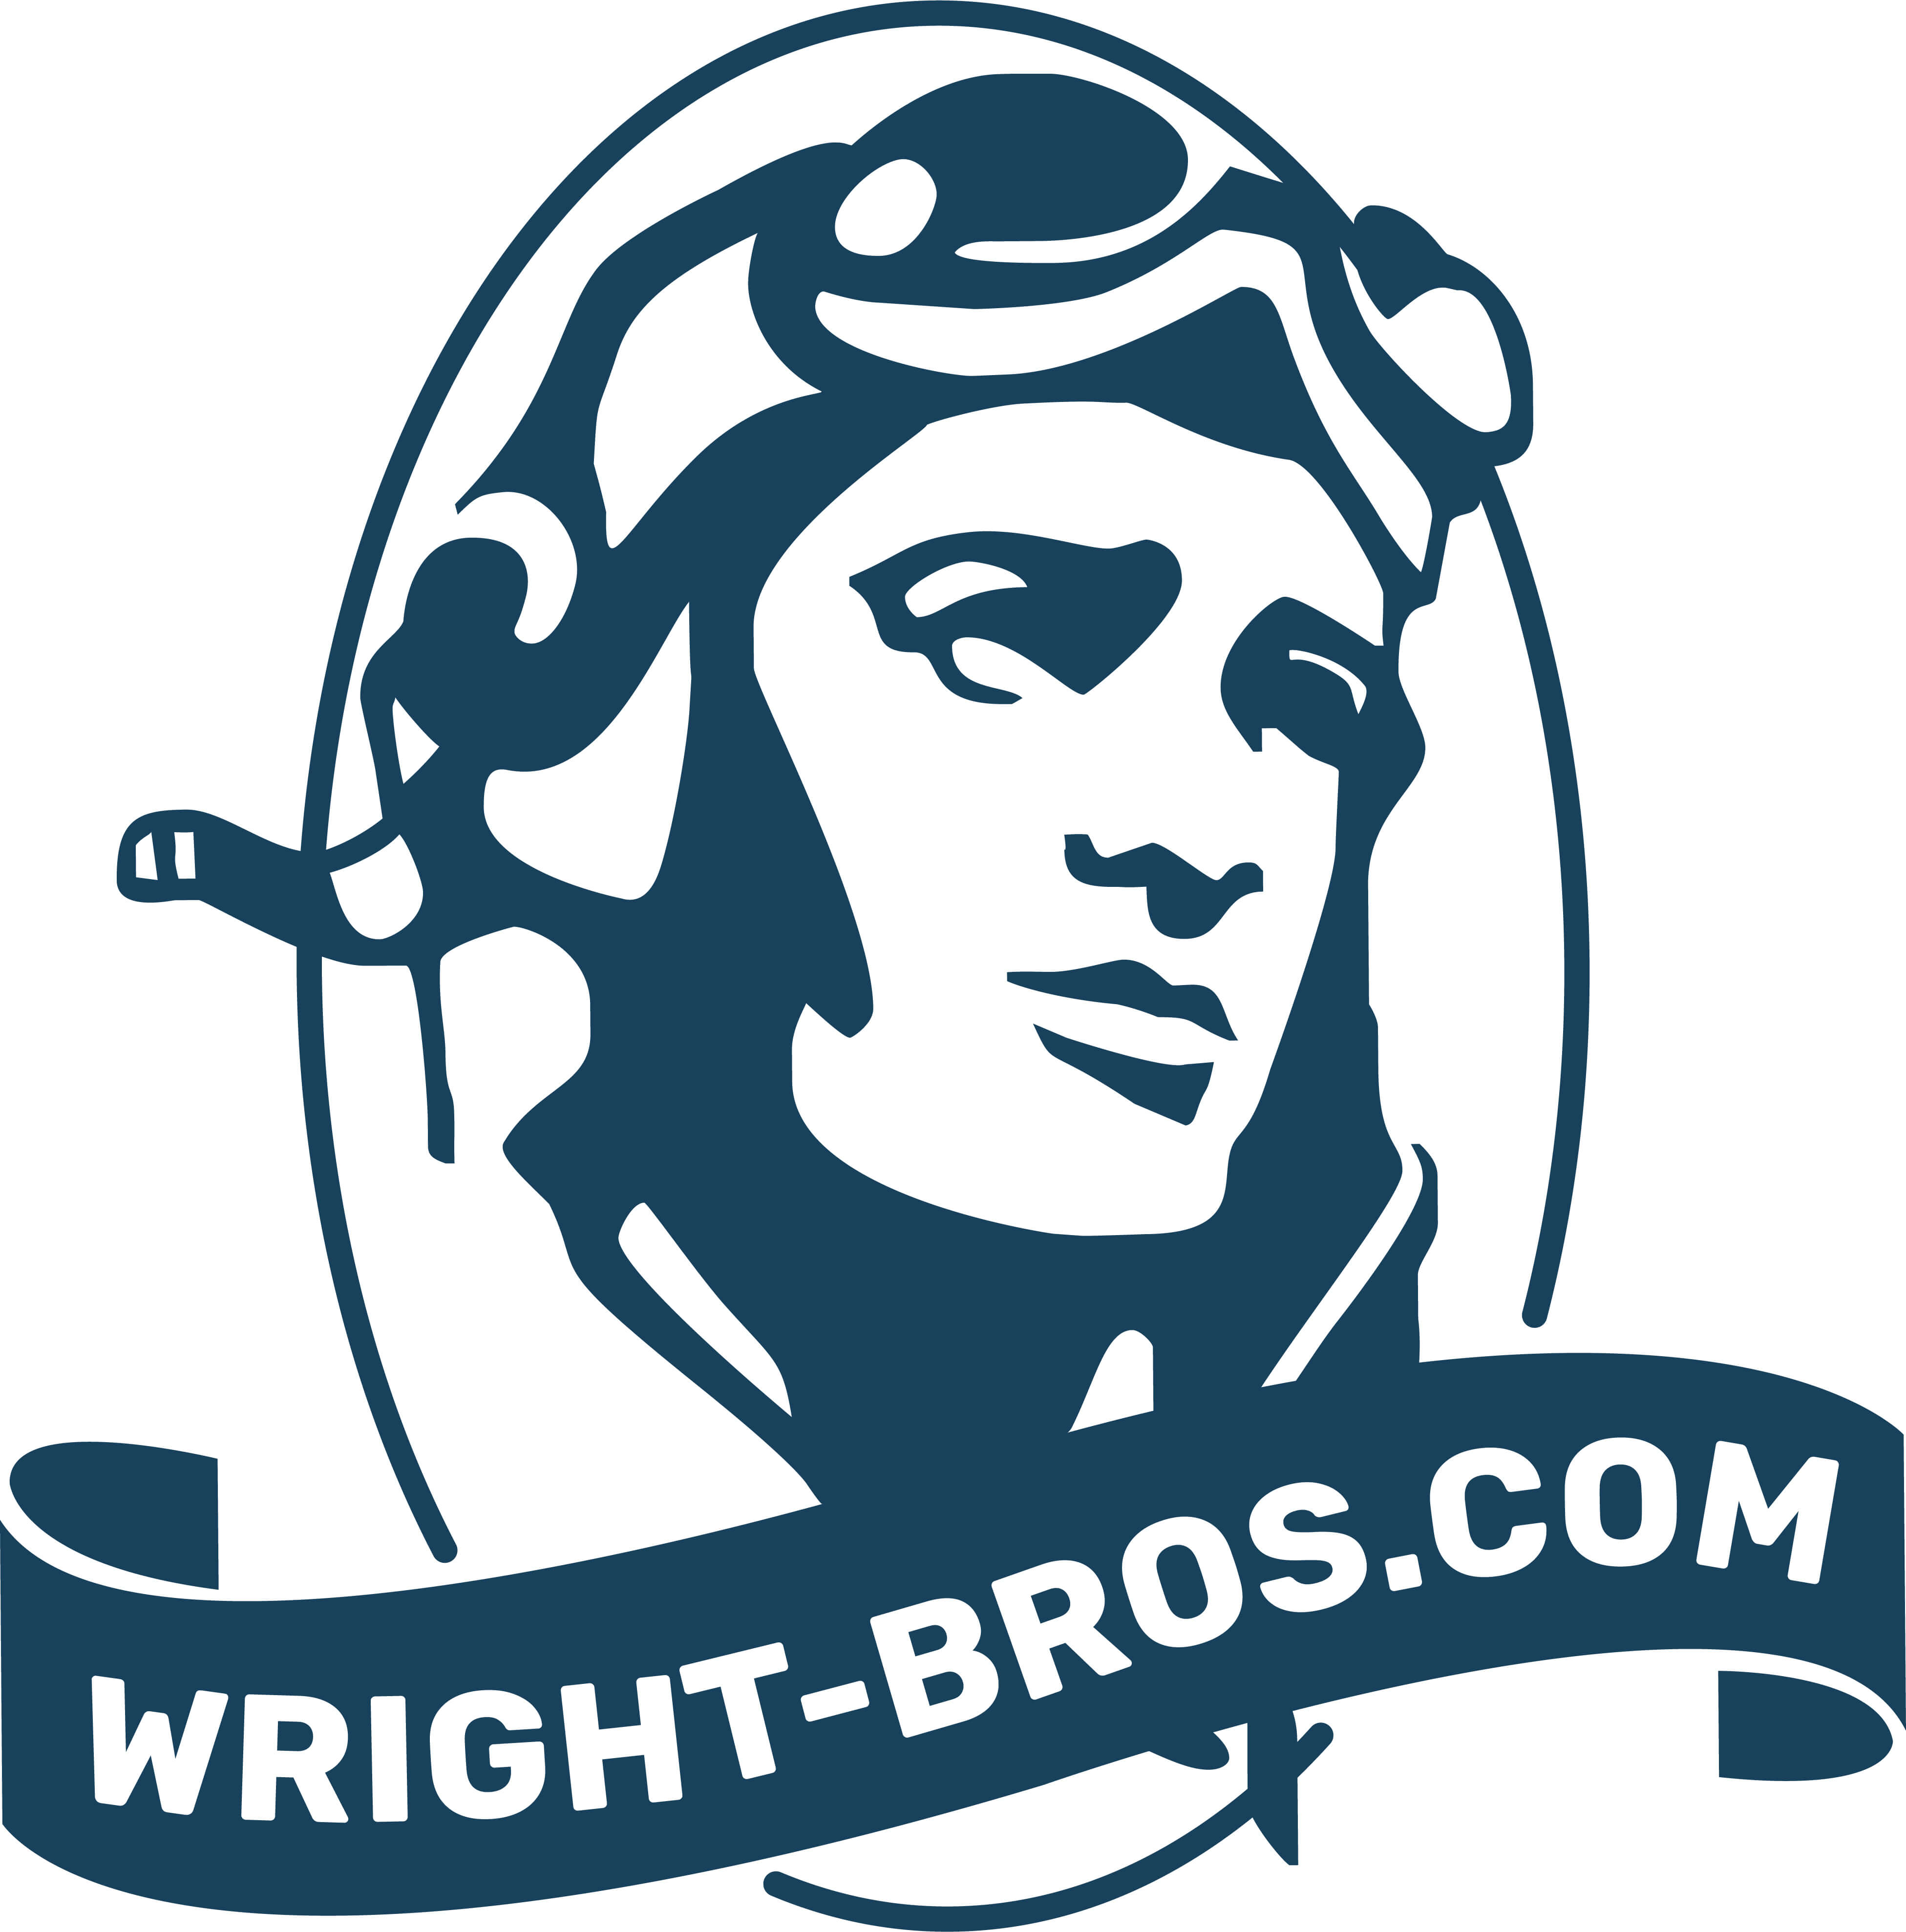 www.wright-bros.com